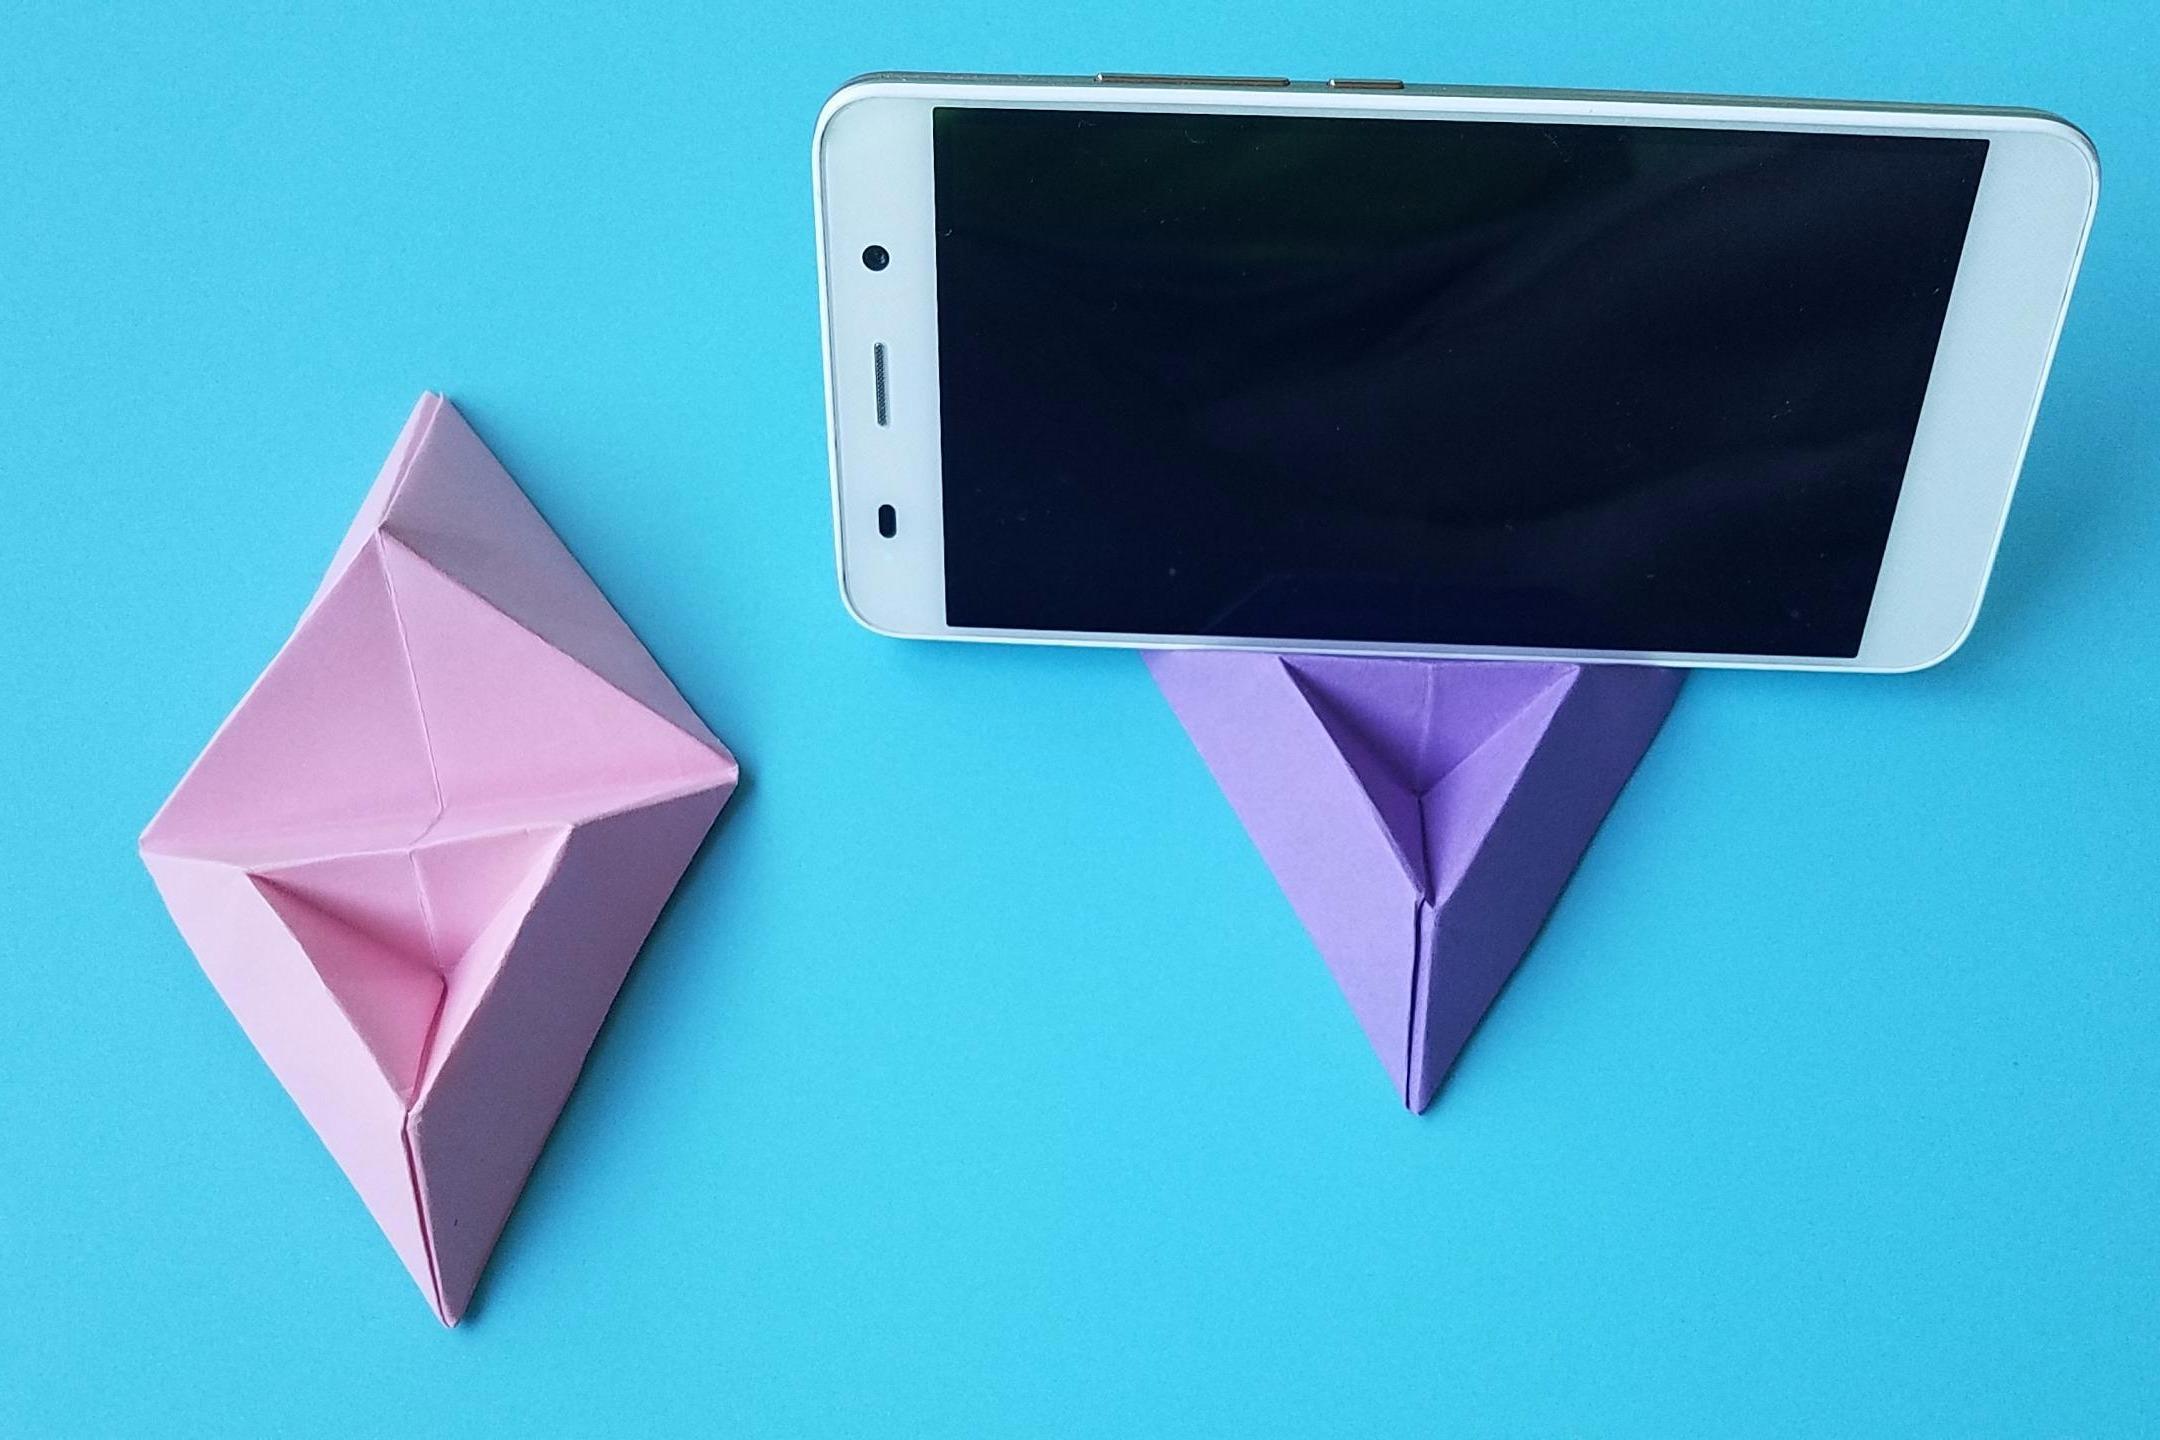 视频:折纸王子教你折纸手机支架,讲解详细,简单又实用